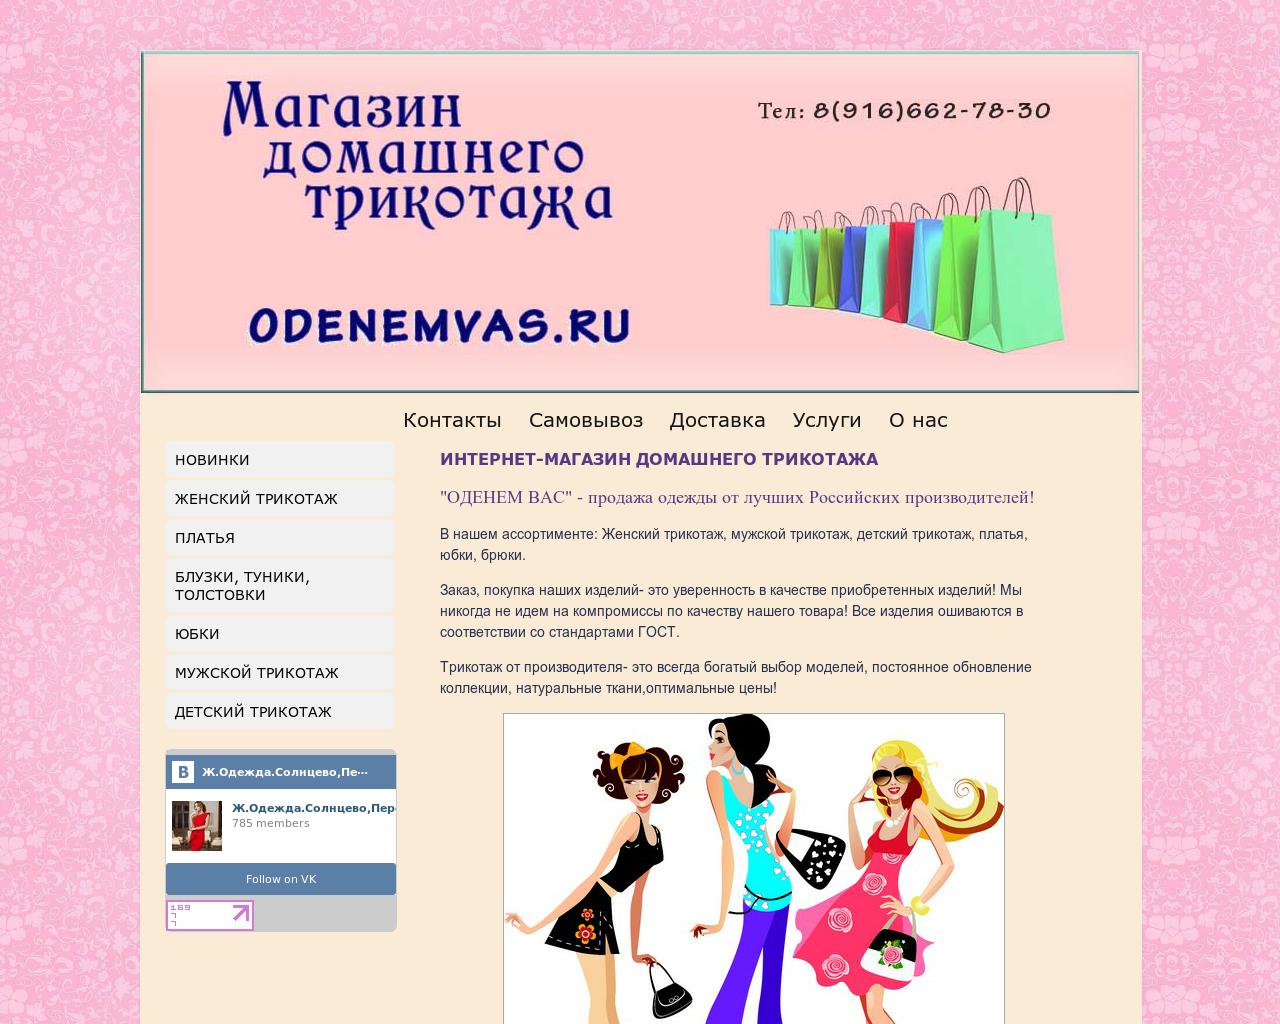 Изображение сайта odenemvas.ru в разрешении 1280x1024